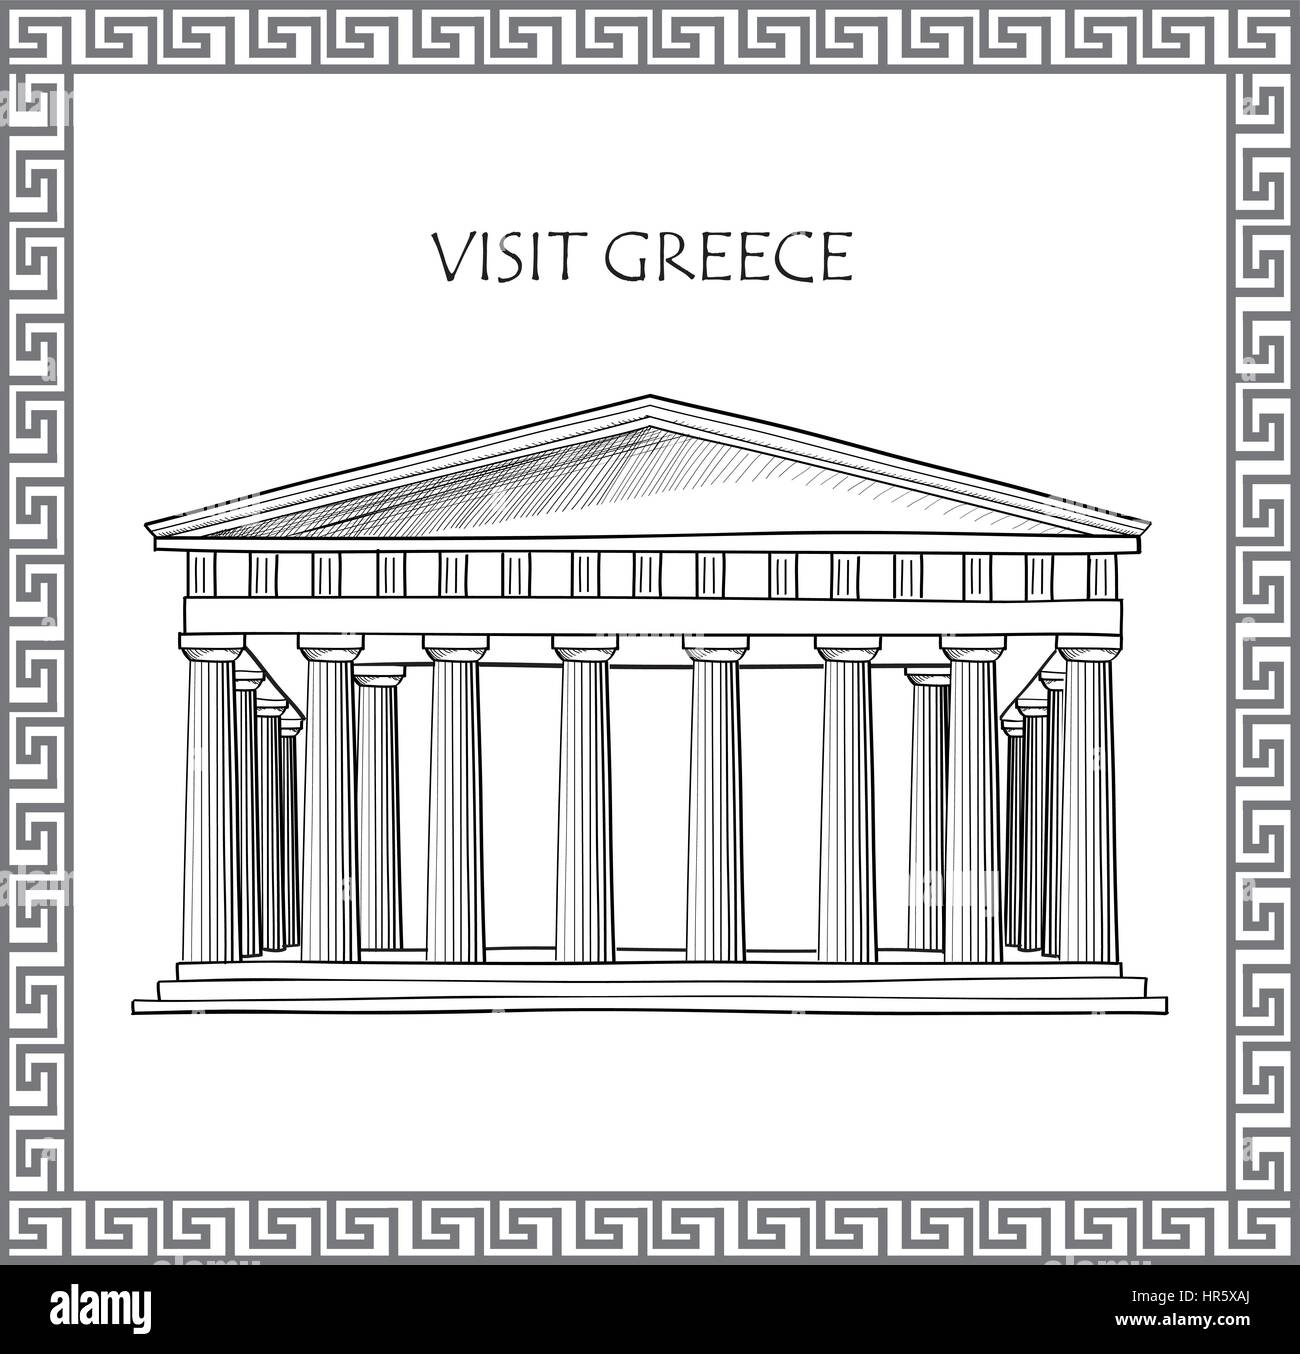 Die Akropolis in Athen, Griechenland. besuchen sie Griechenland Karte. Zierpflanzen traditionelle griechische Vektor Rahmen. Stock Vektor